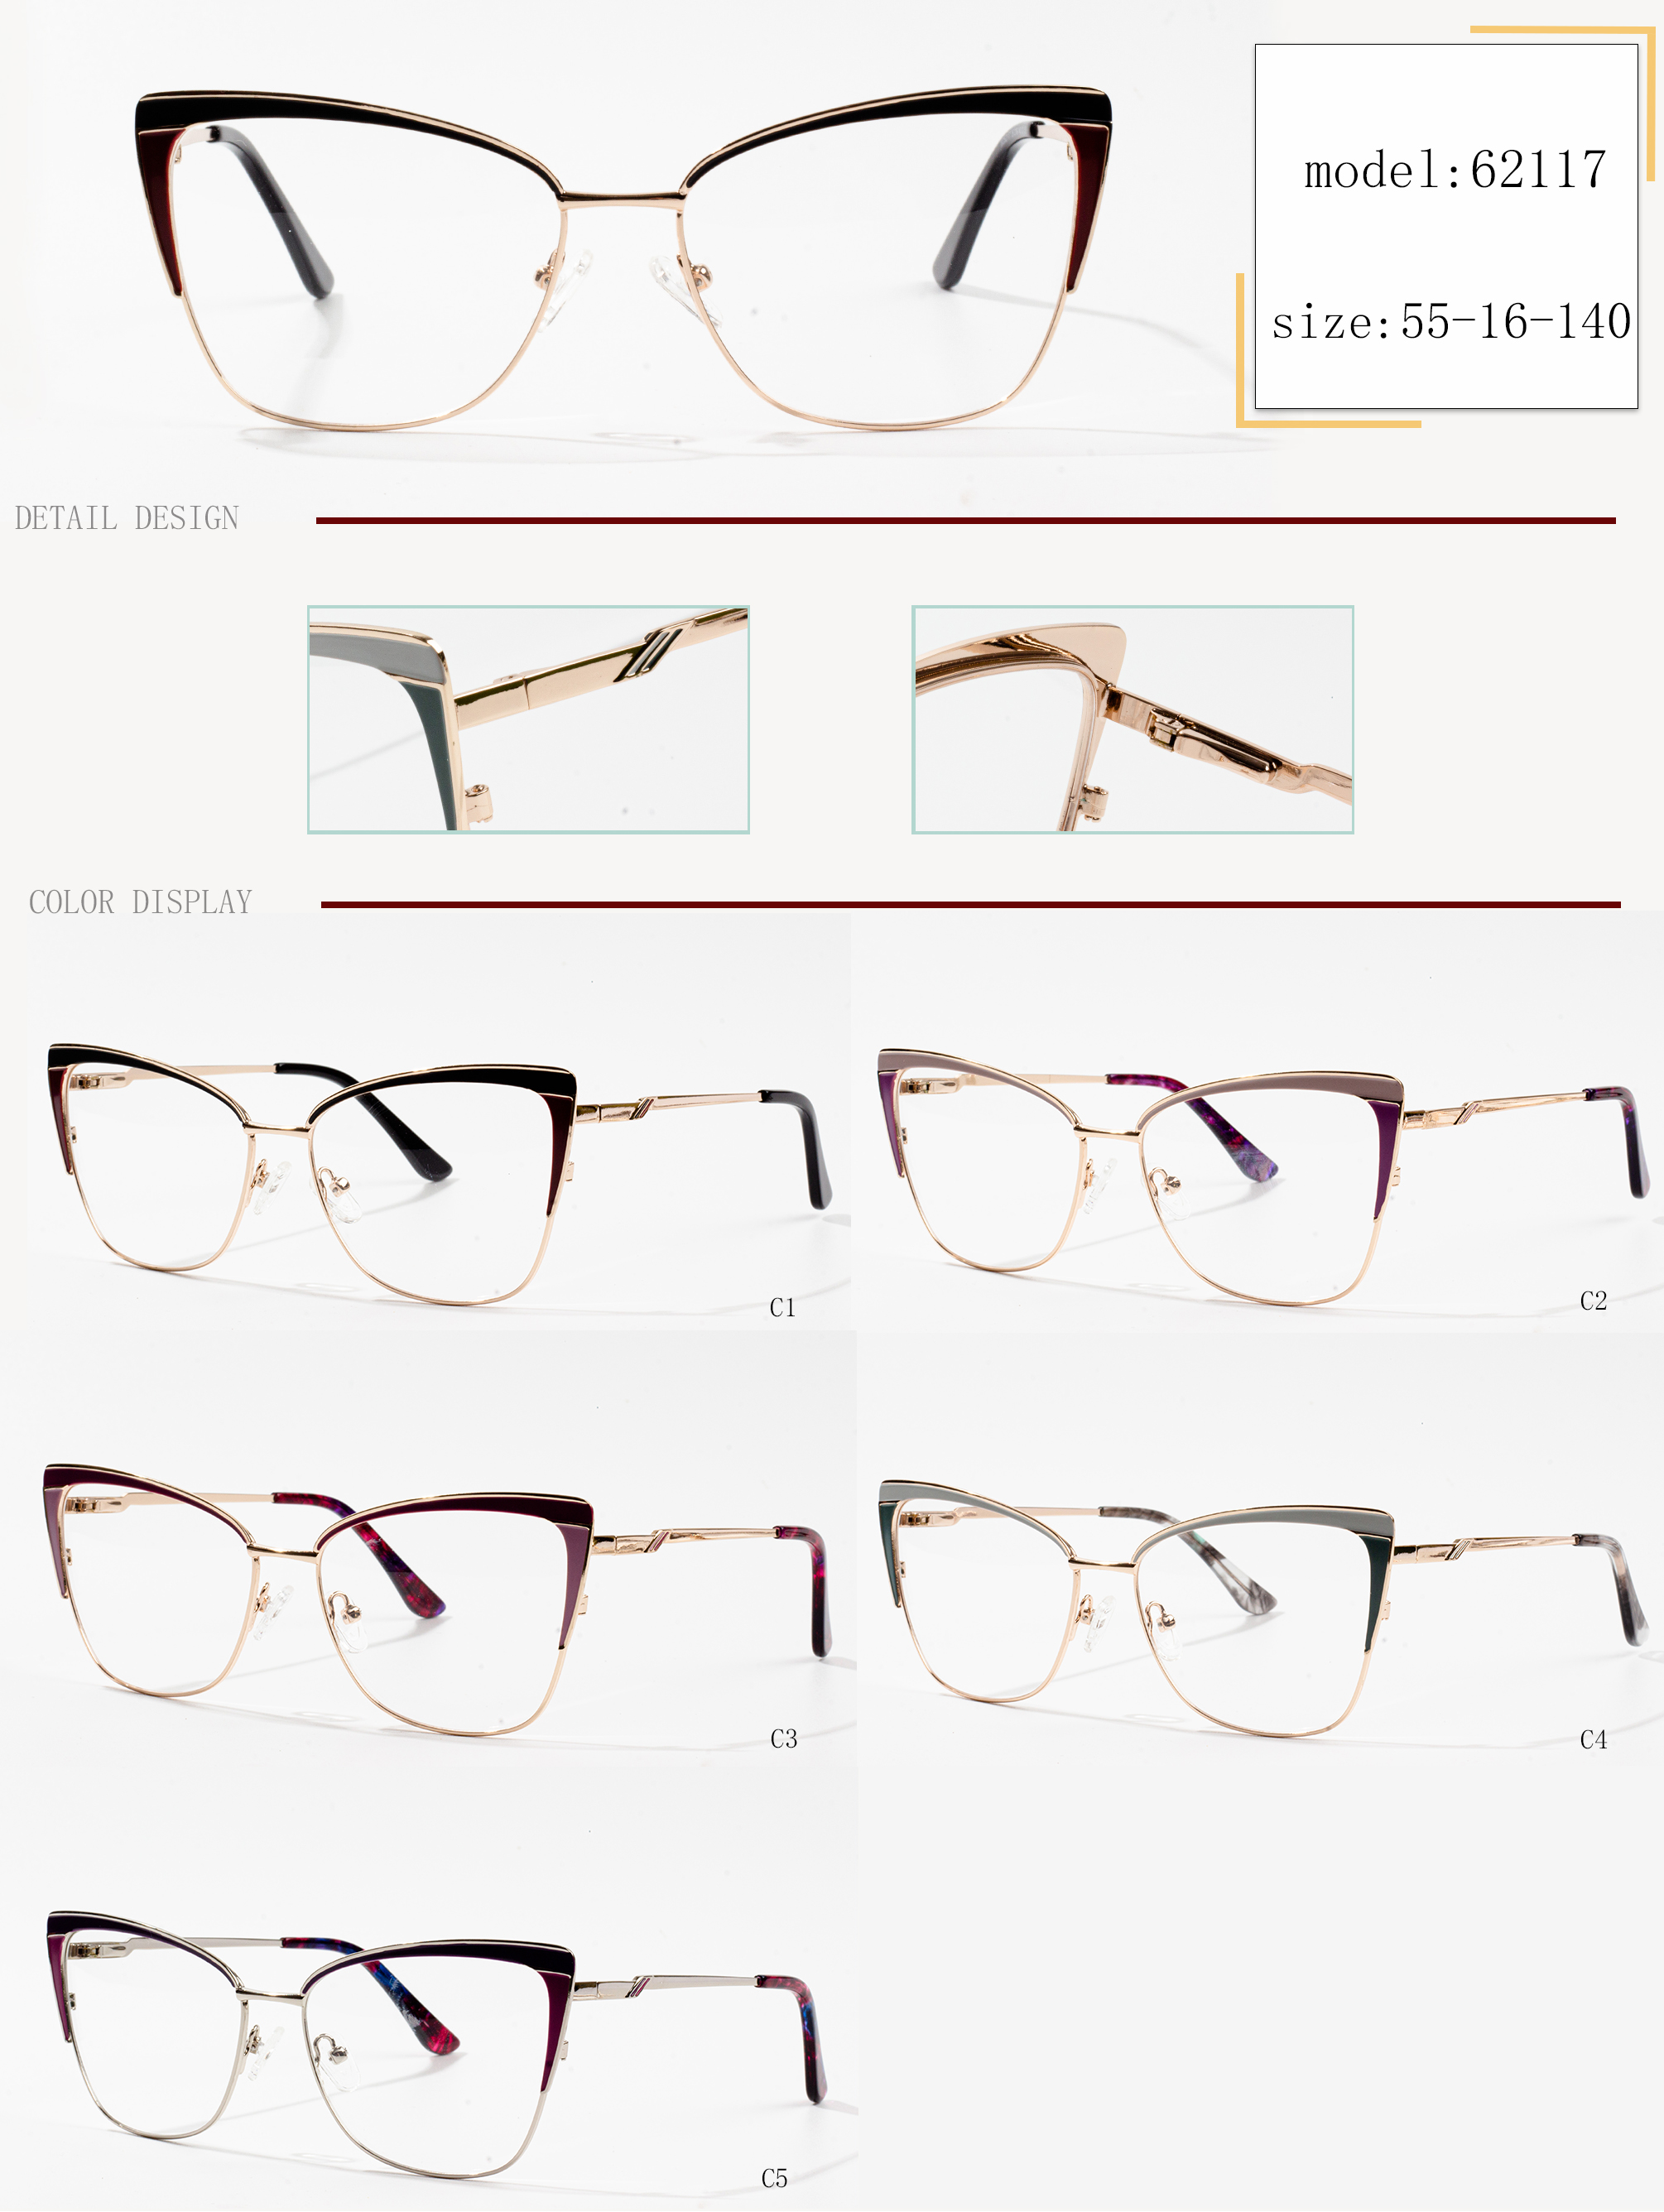 أنواع مختلفة من إطارات النظارات